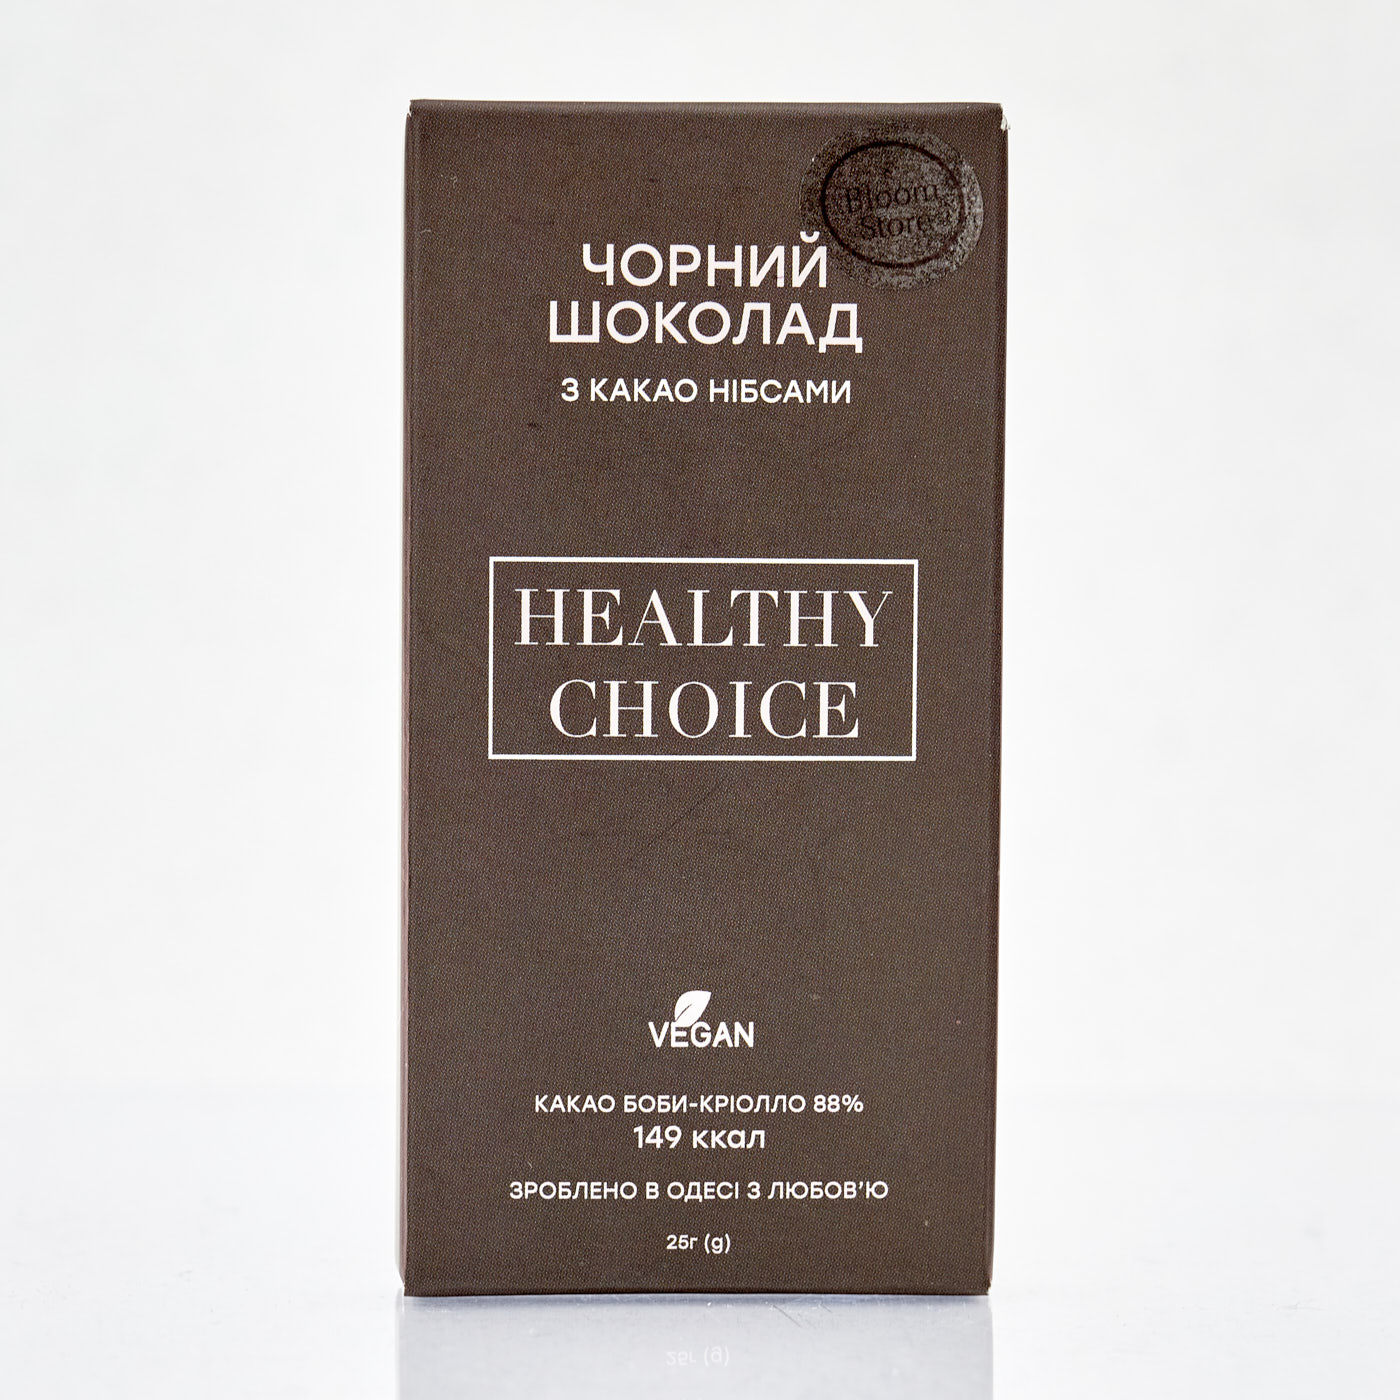 Черный шоколад 88% с какао-нибсами - 1